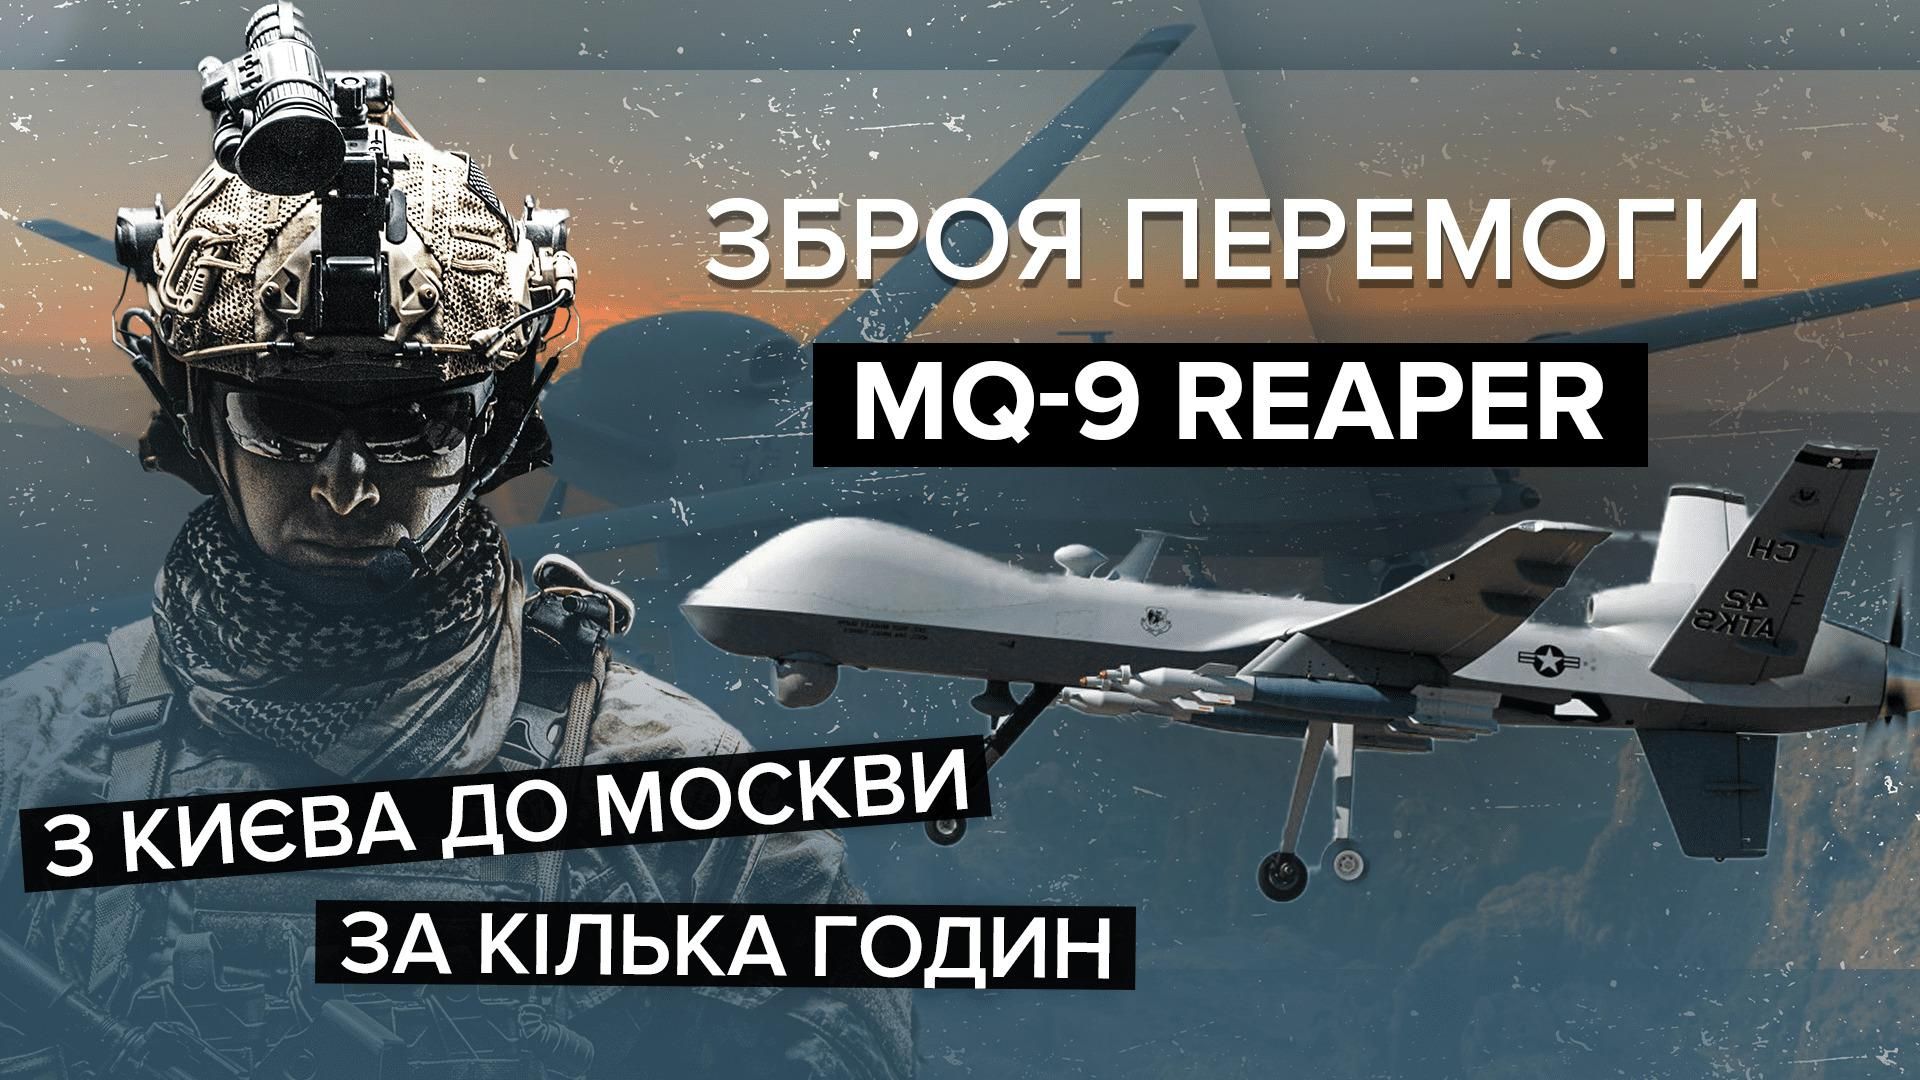 MQ-9 Reaper – новая легенда войны: все о мощнейшем боевом дроне в мире